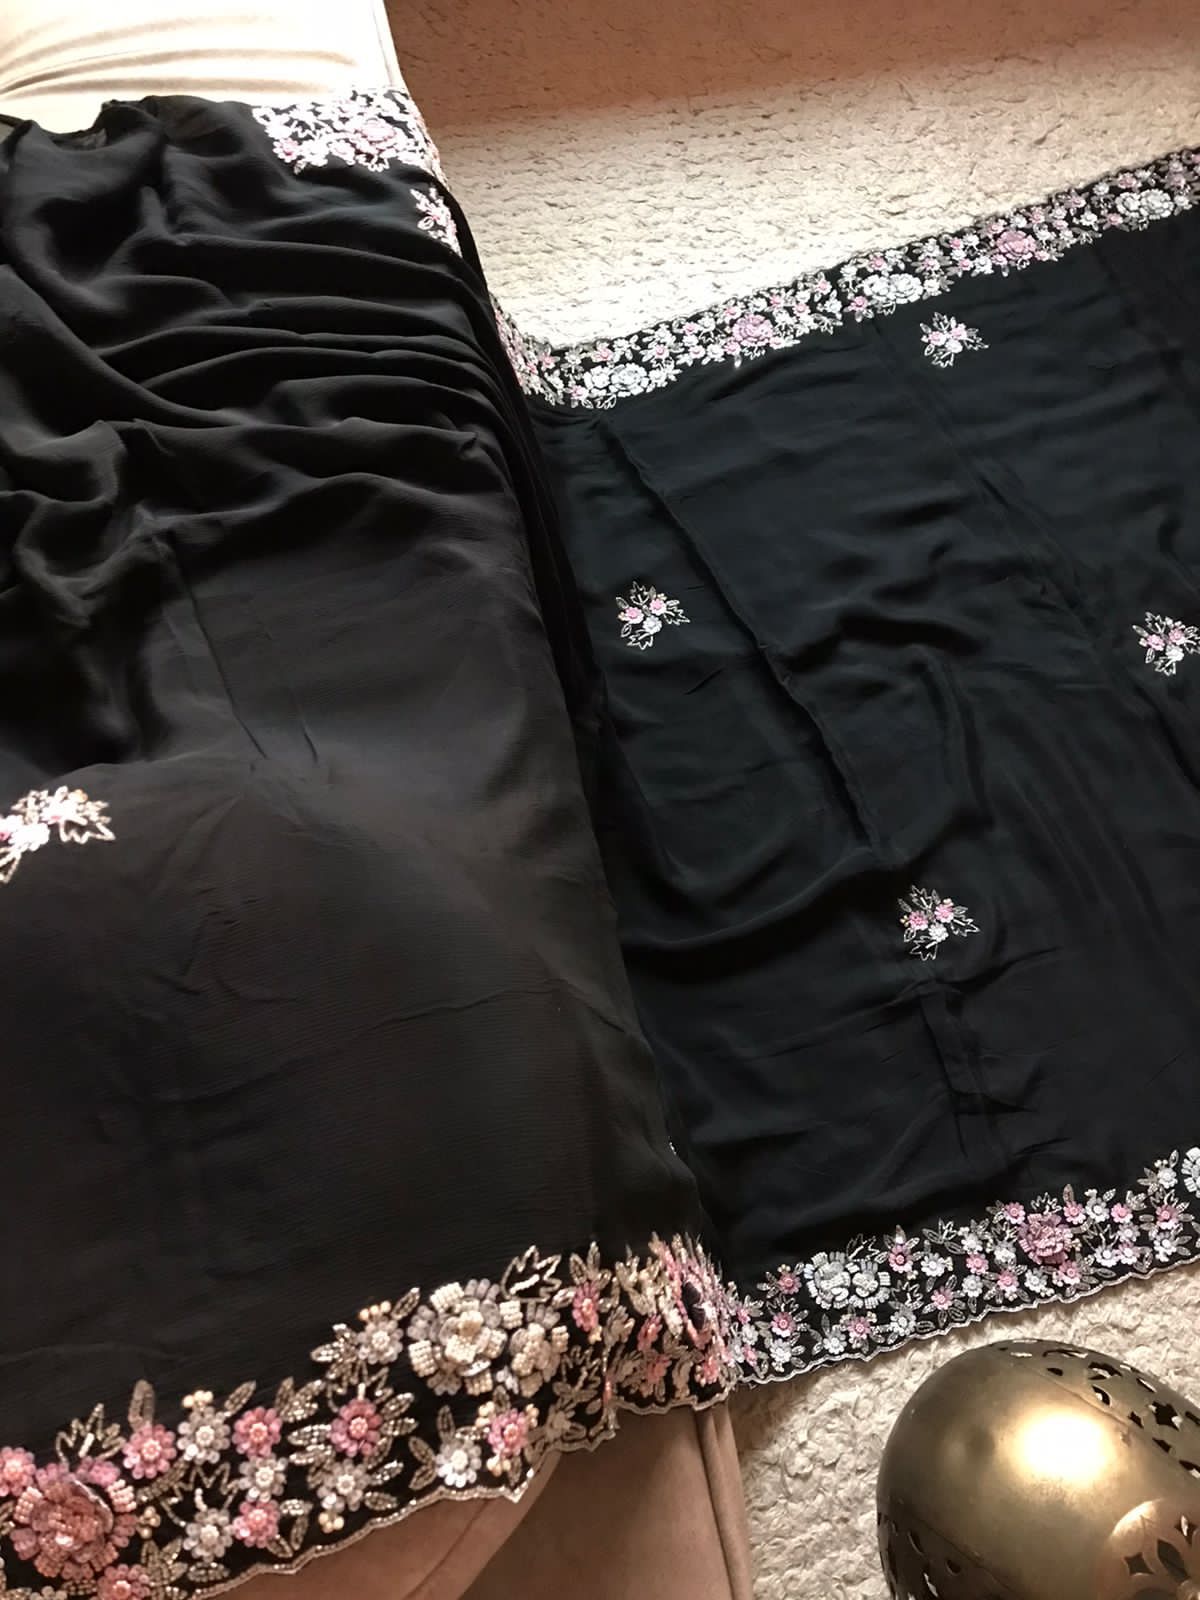 Hot black sexy beauty saree